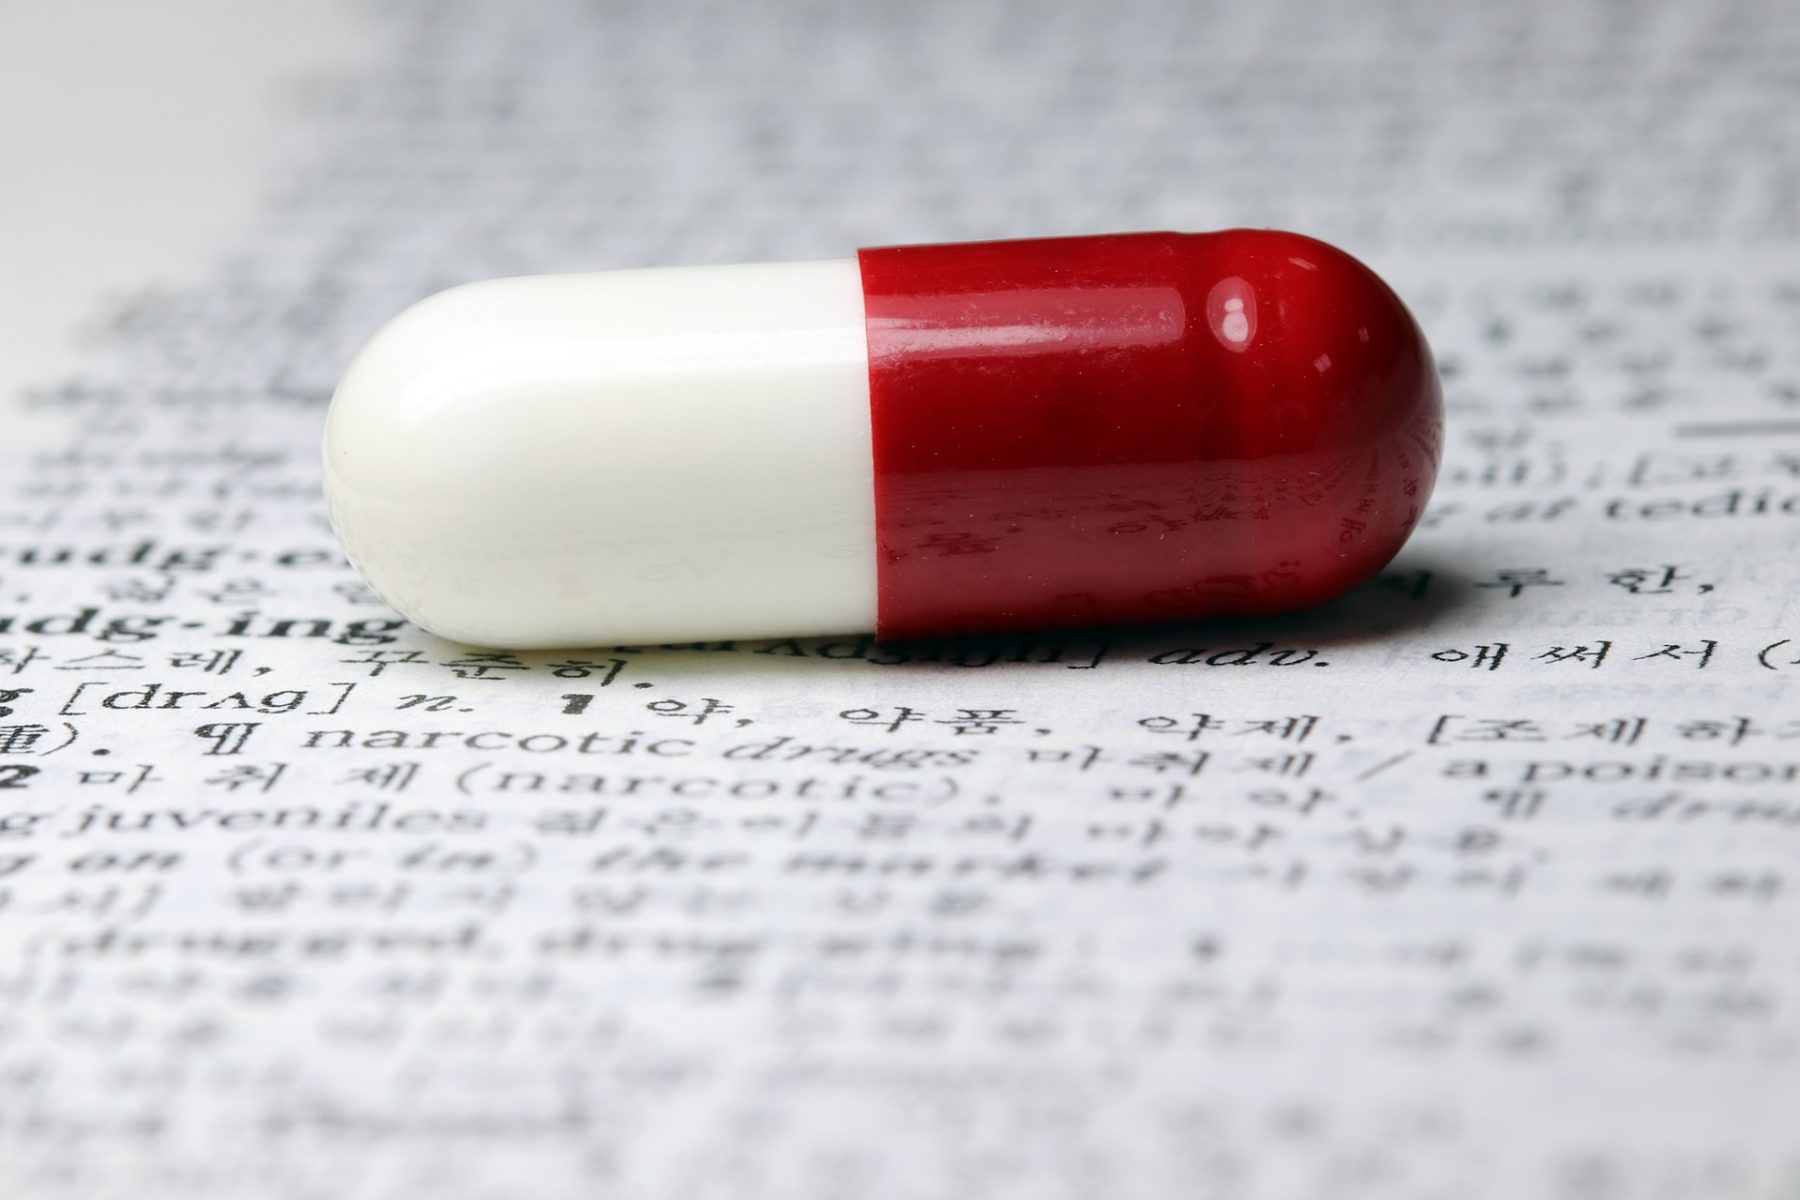 Μείωση κόστους θεραπείας: 3 βήματα που θα μπορούσαν να μειώσουν το κόστος στην φαρμακοβιομηχανία